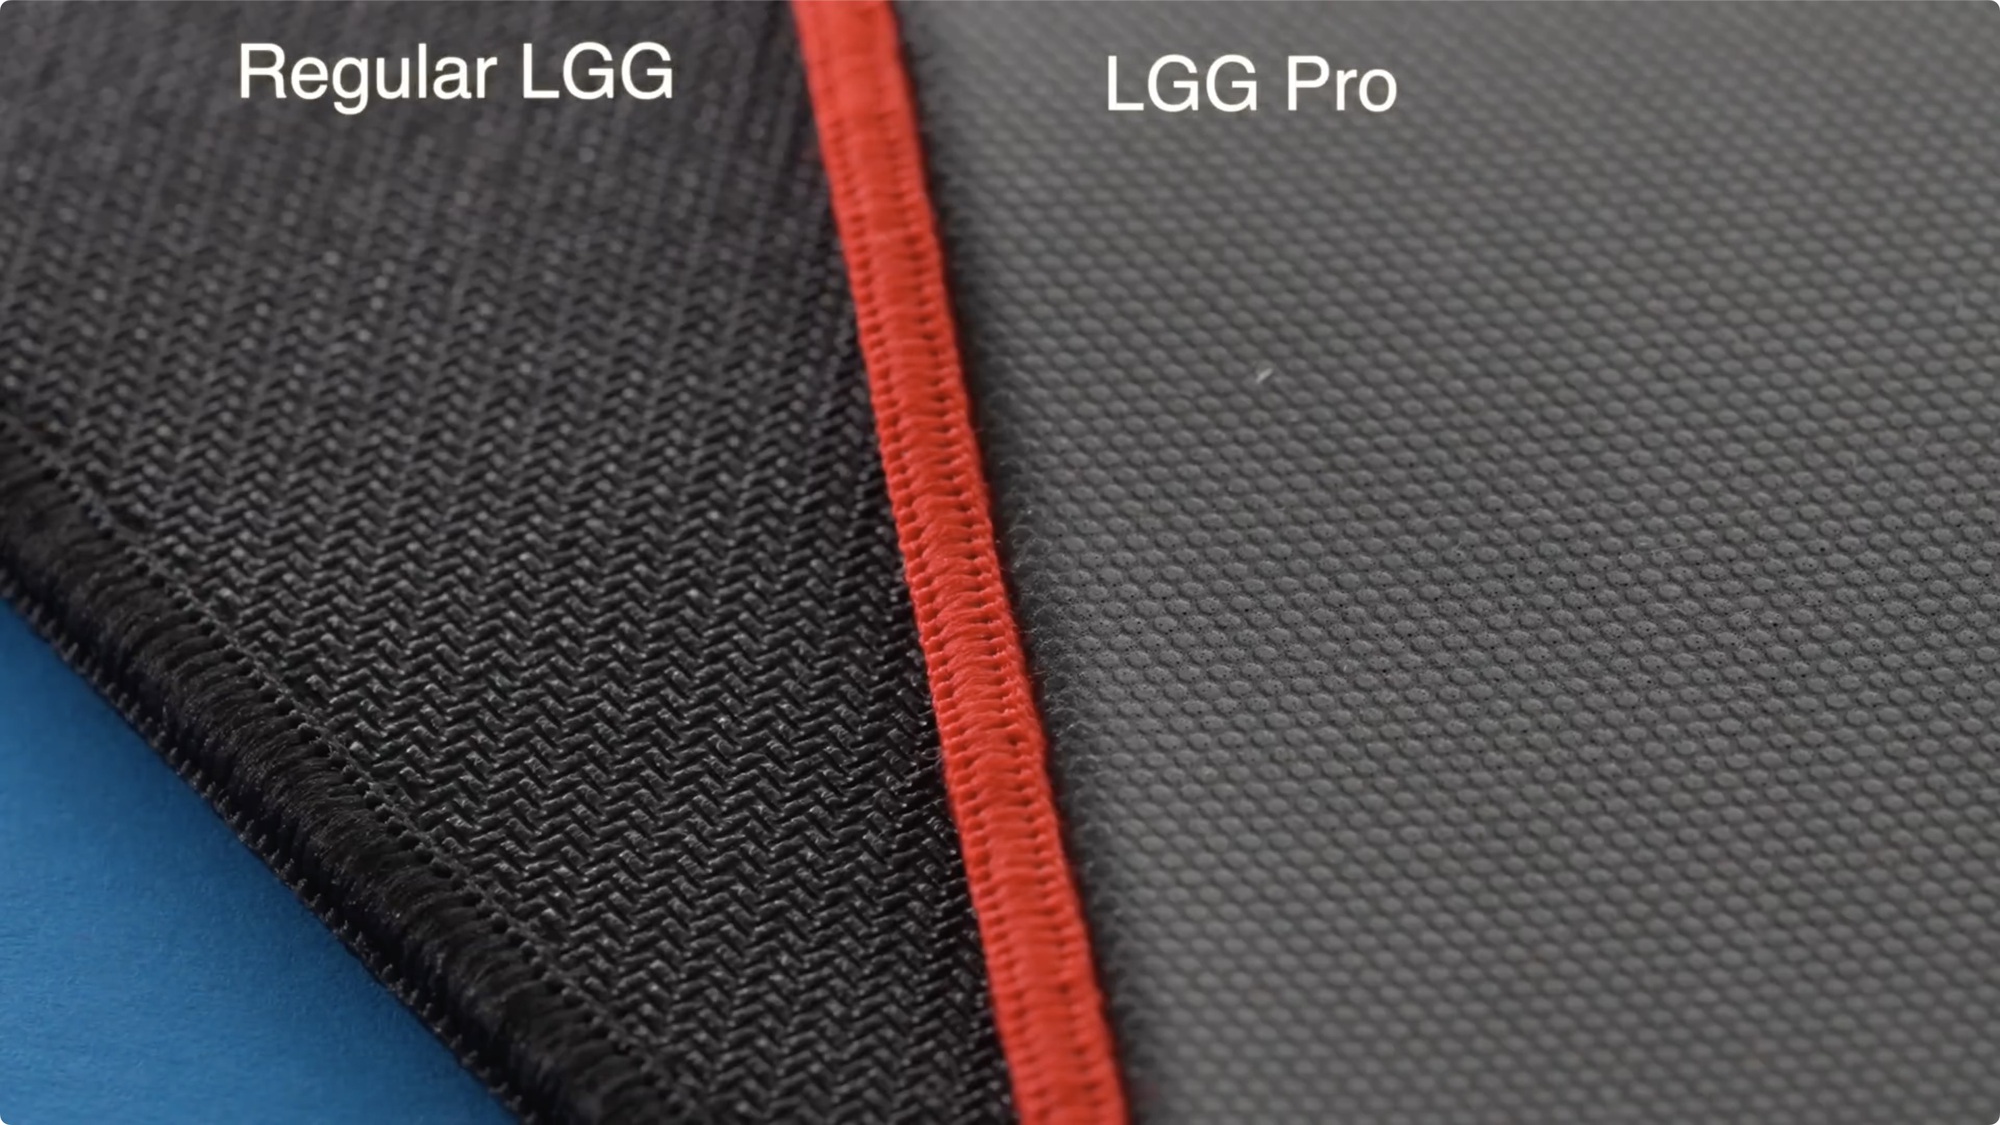 Lethal Gaming Gear ra mắt pad chuột Pro cho game thủ với đế poron siêu mềm, giá từ 1.32 triệu đồng - Ảnh 5.